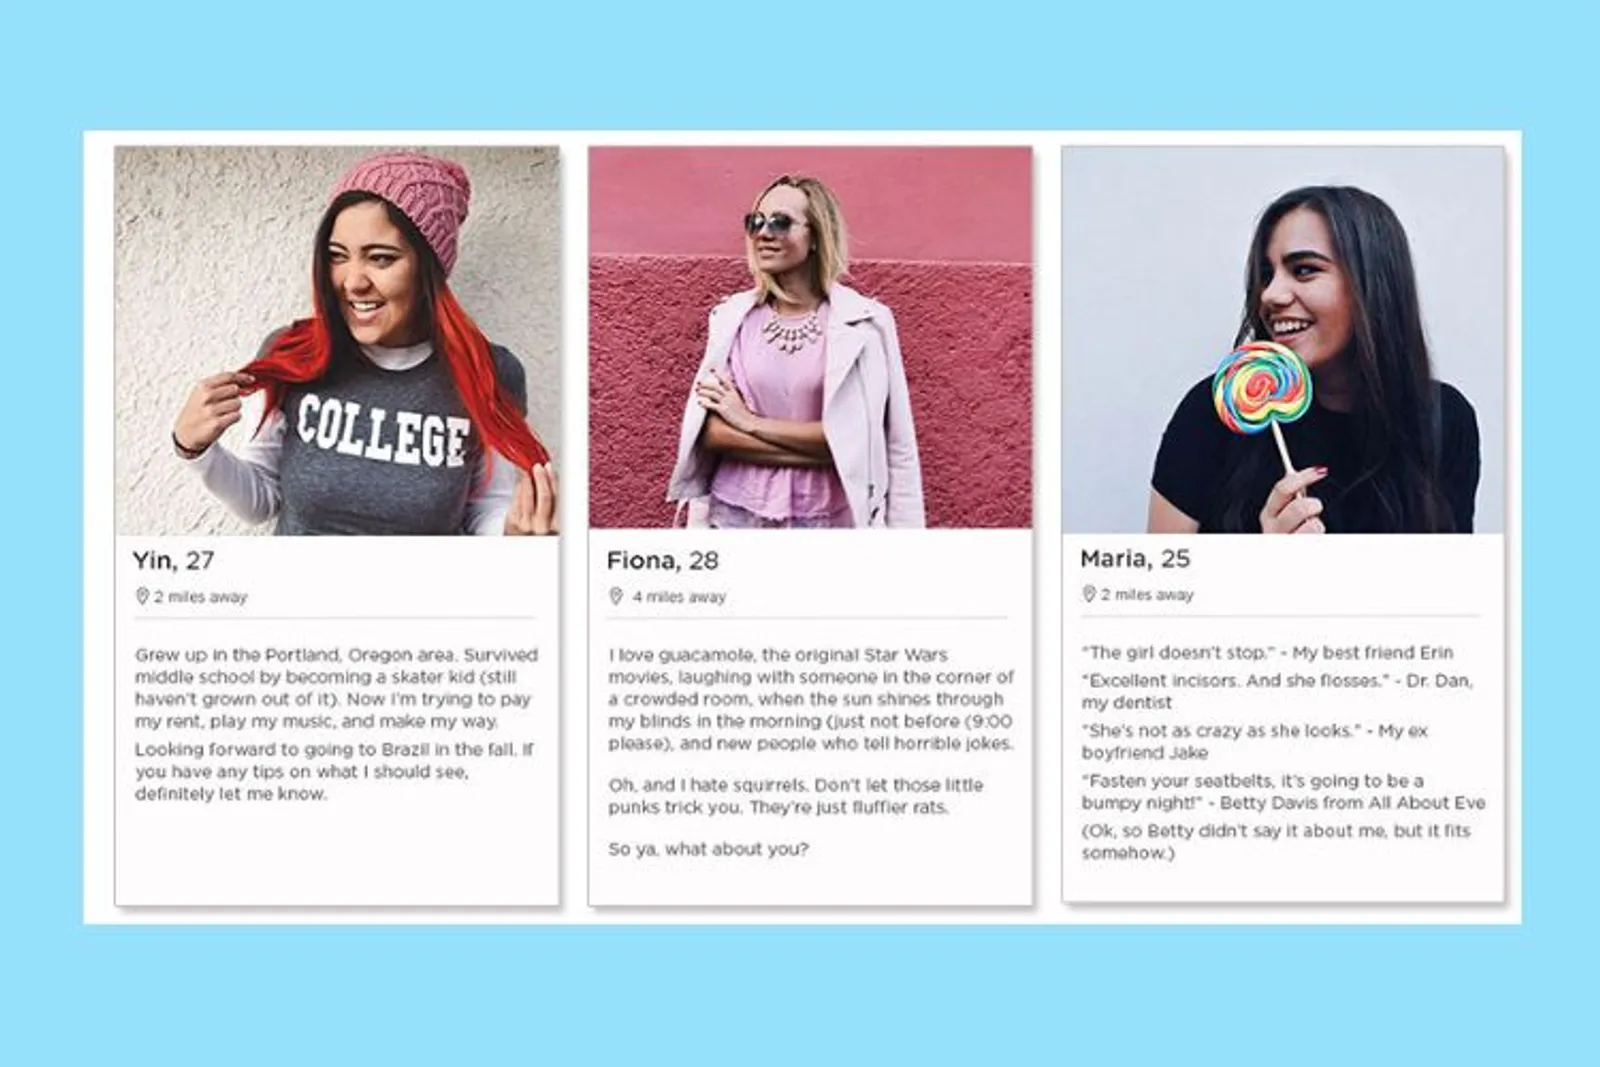 5 Langkah Membuat Profil Tinder yang Menarik, Foto Saja Nggak Cukup!